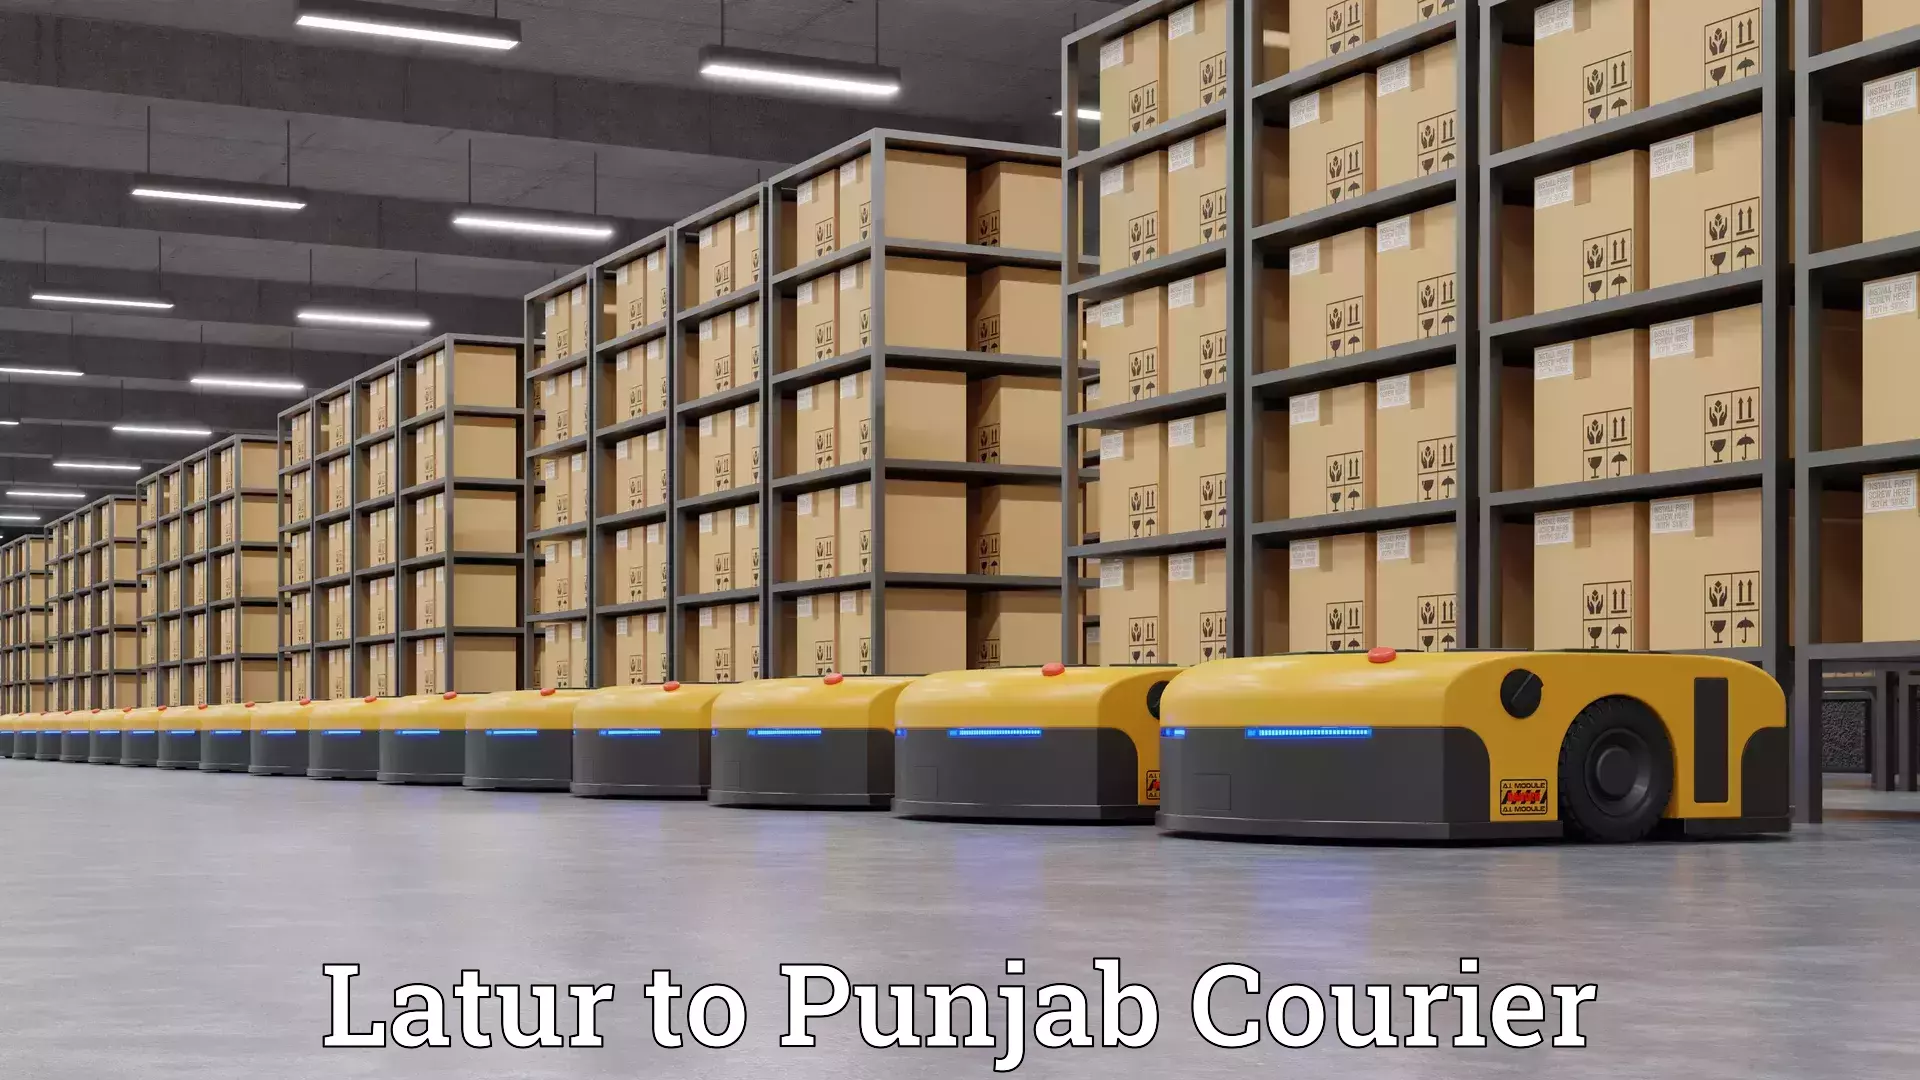 Furniture transport professionals Latur to Punjab